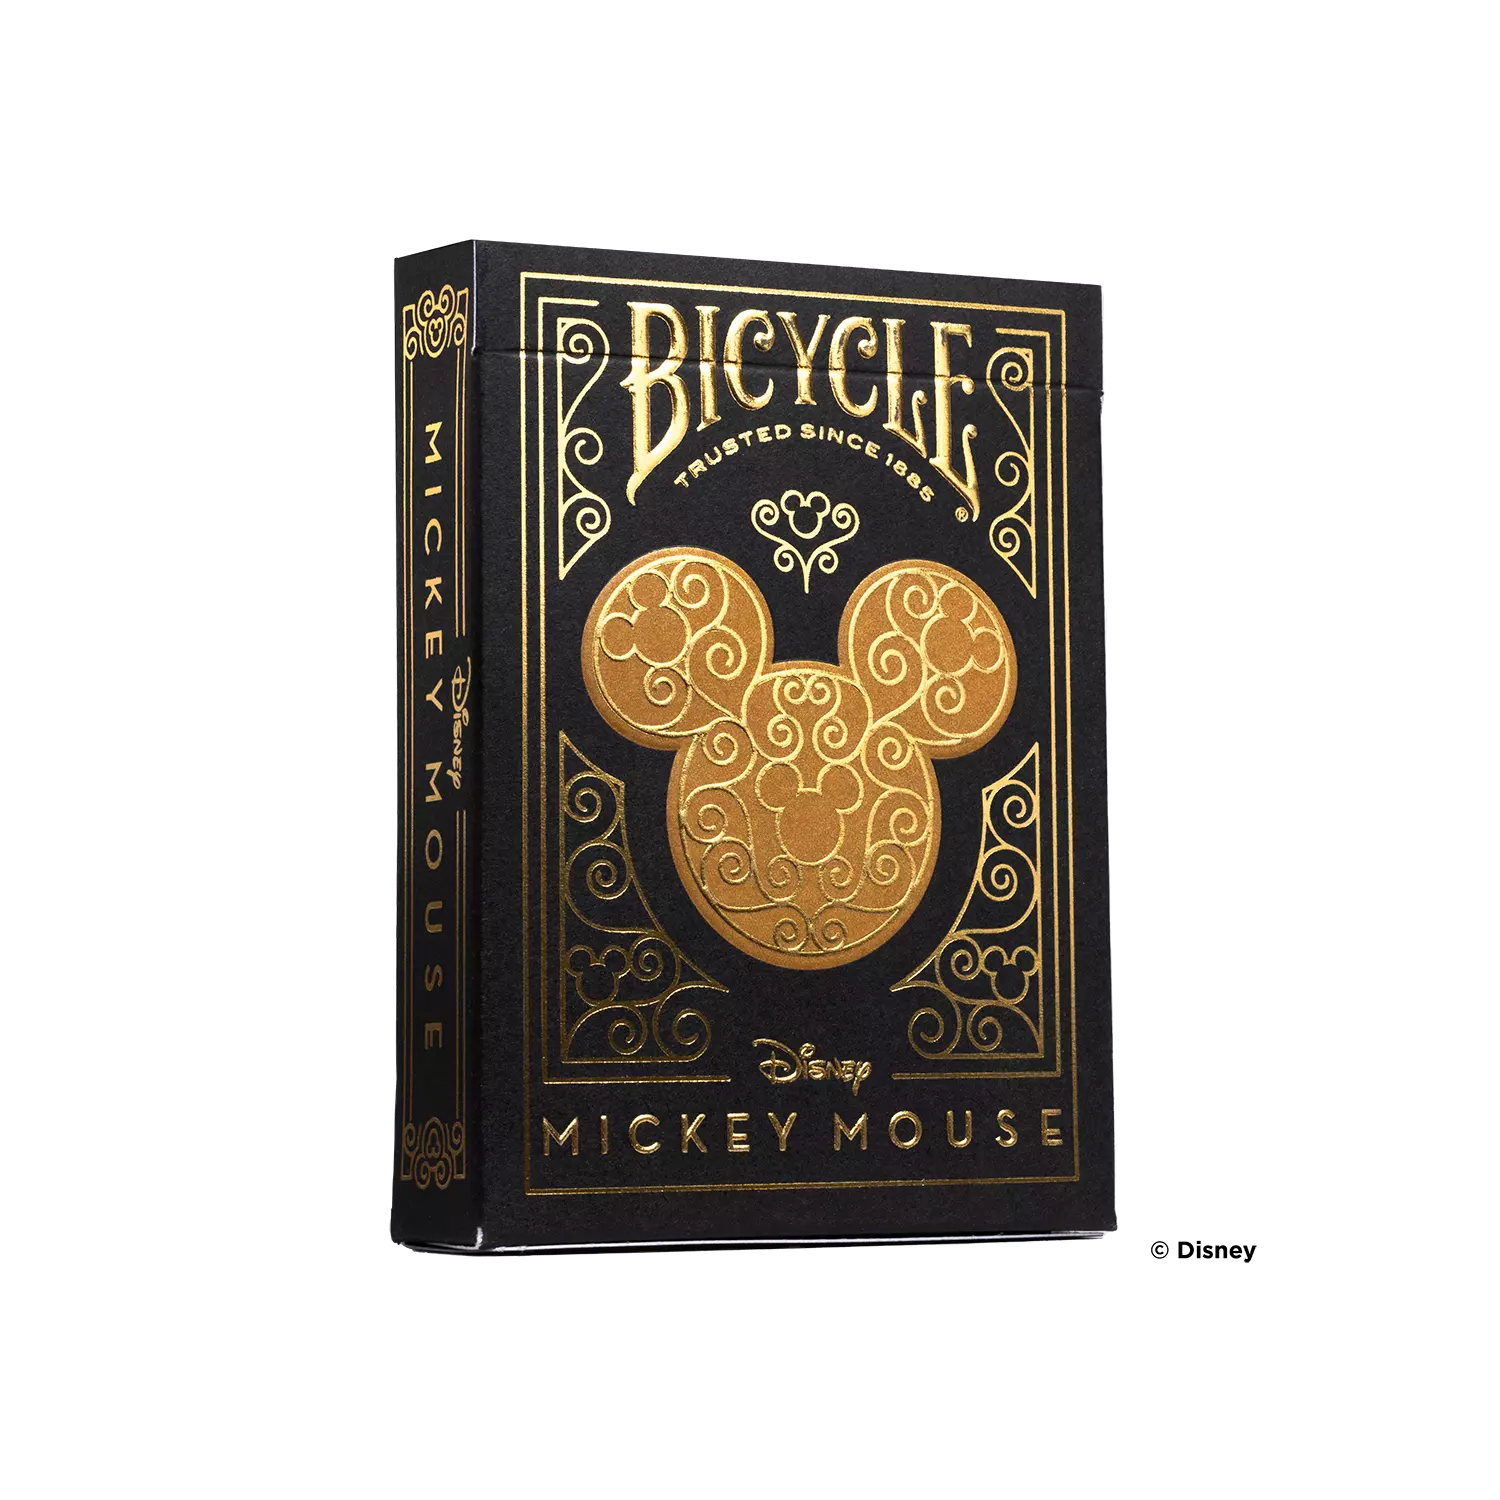 Eine Bicycle Ultimate Bicycle Disney Mickey Mouse Black and Gold Kartenschachtel steht mit sichtbarer Vorderseite vor einem weißem Hintergrund.